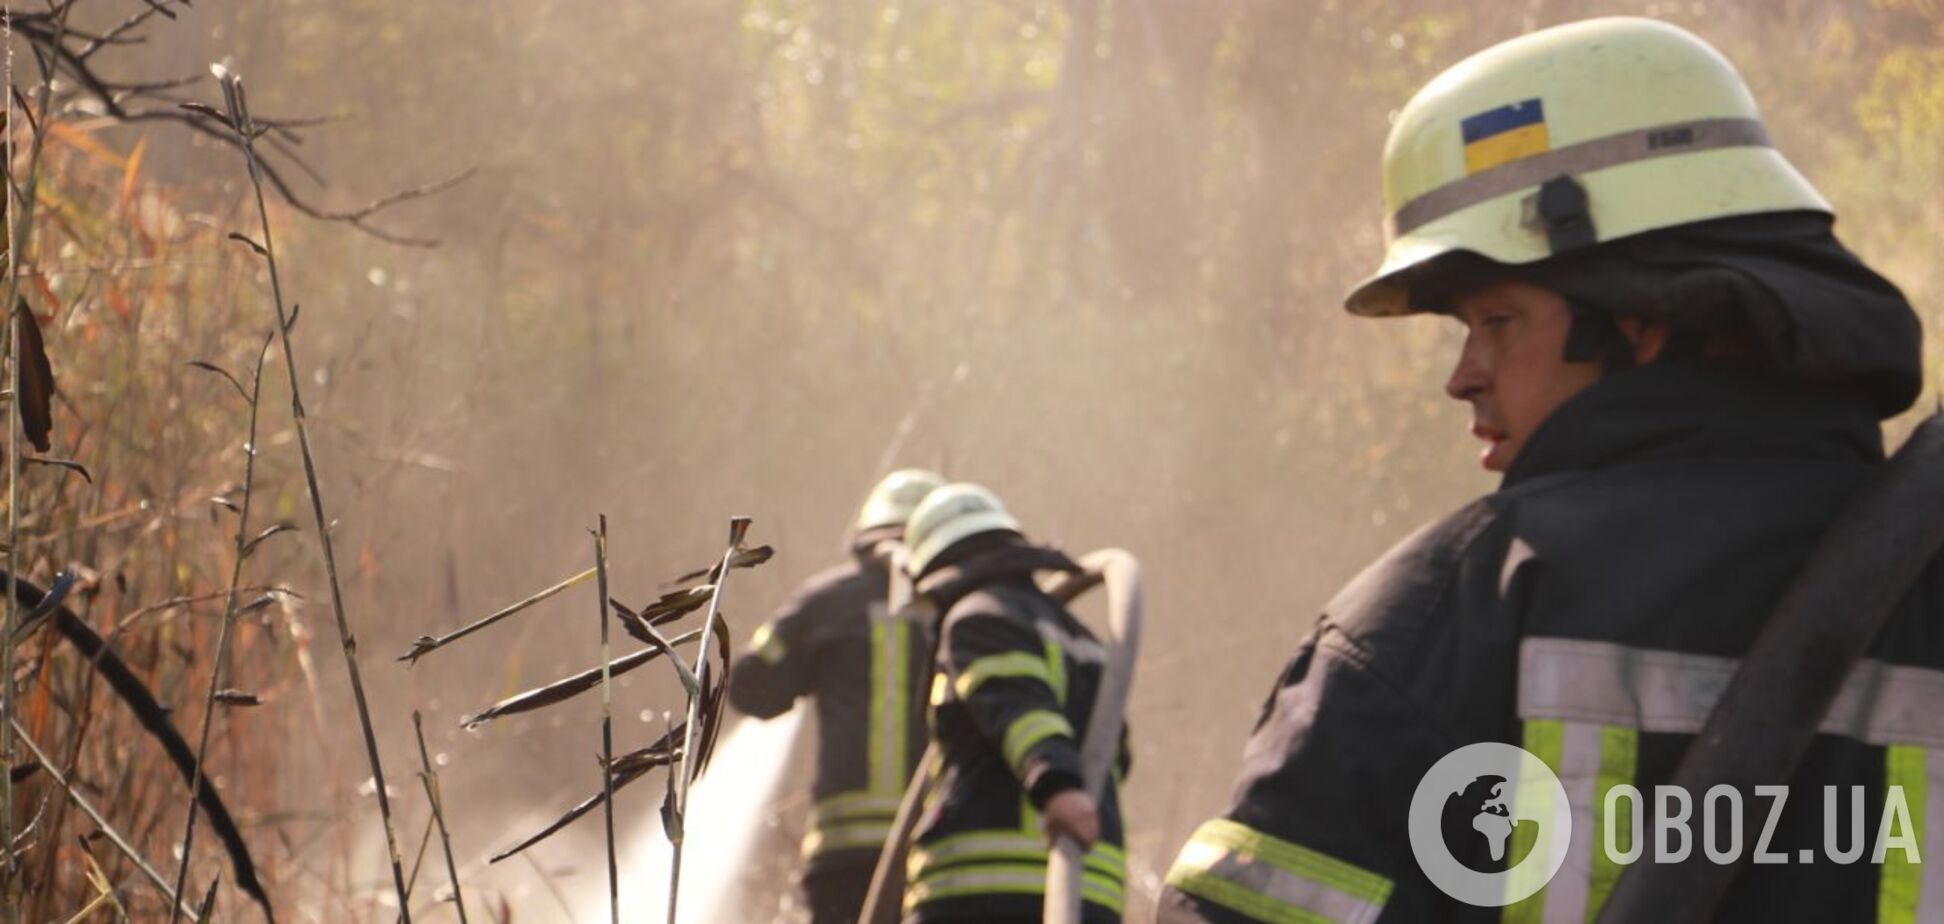 1 травня рятувальники 5 разів гасили пожежі в екосистемах